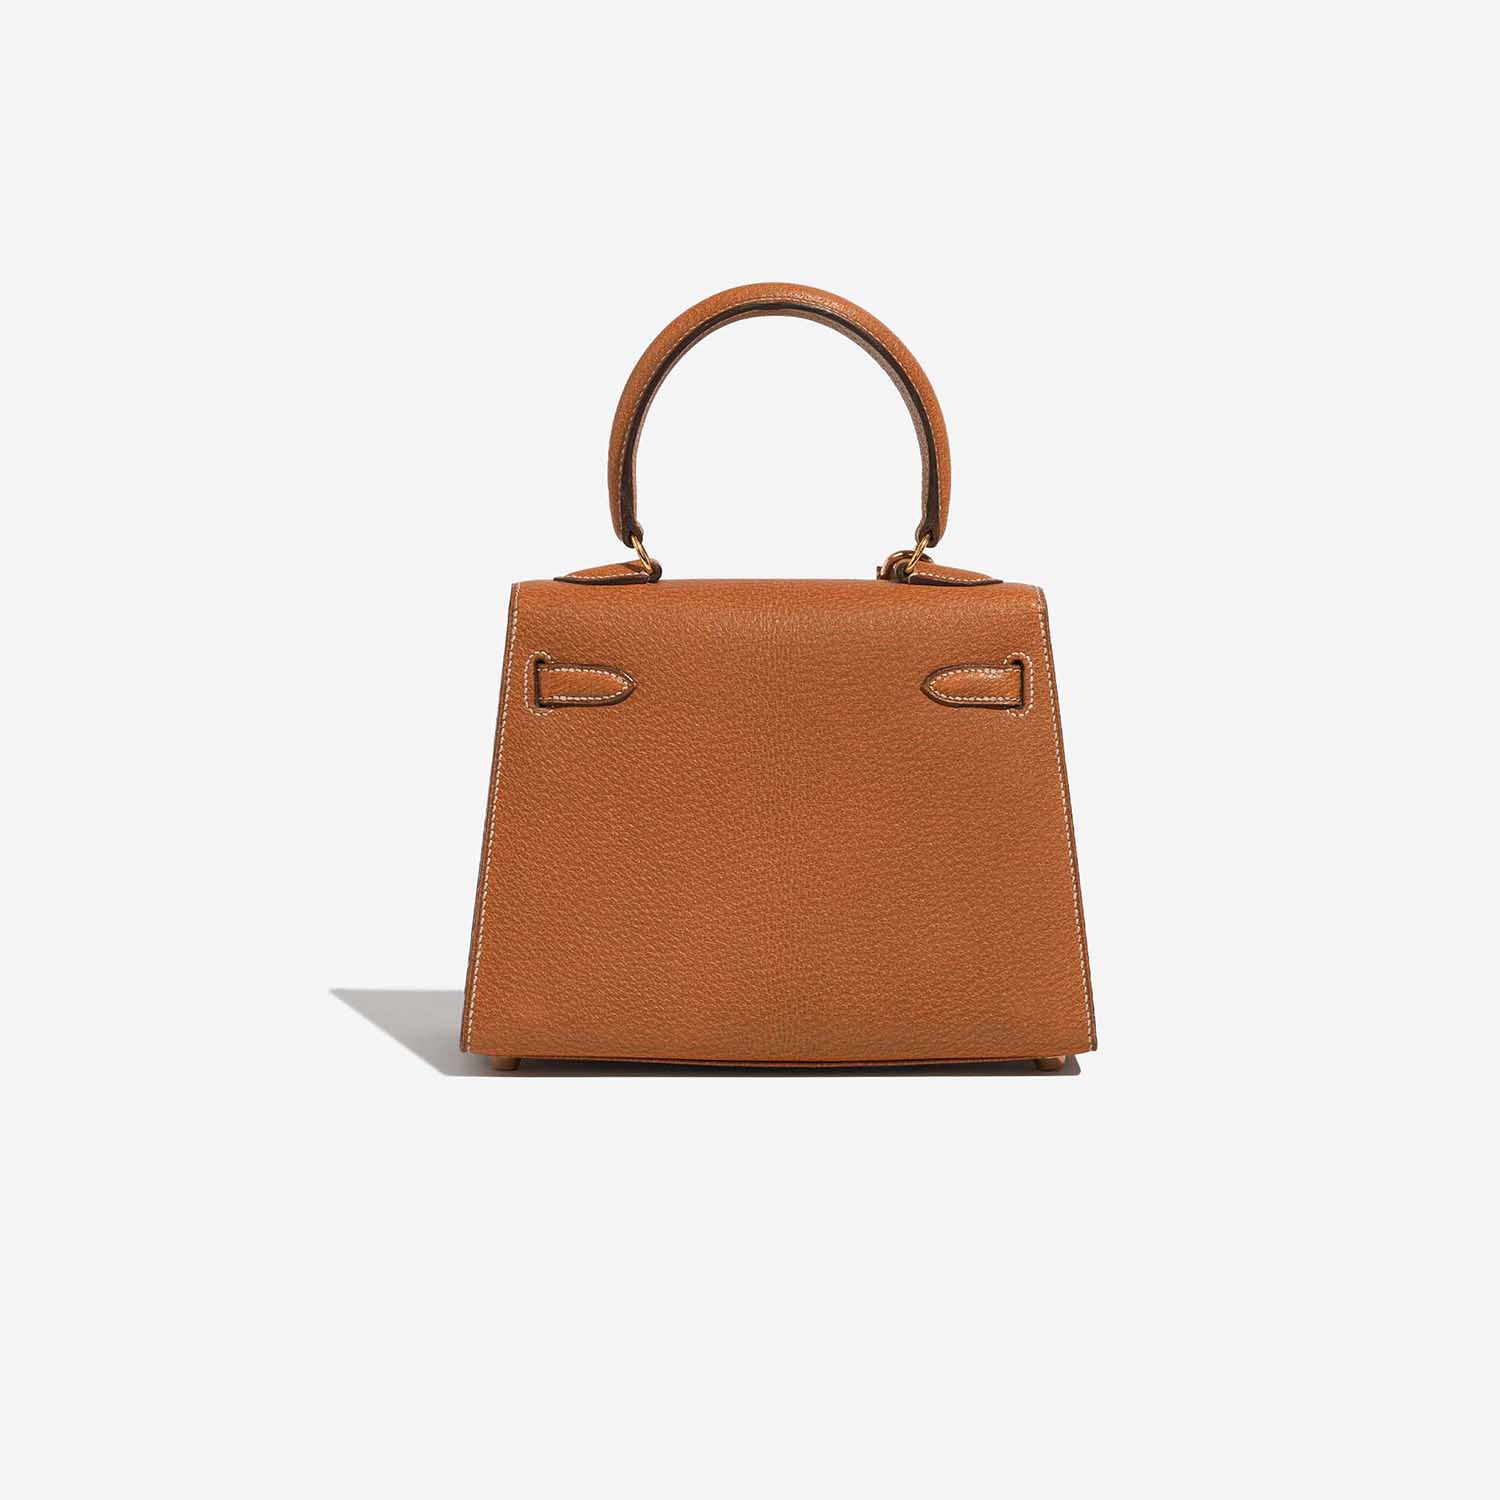 Pre-owned Hermès Tasche Kelly Mini Porc Gold Brown Back | Verkaufen Sie Ihre Designer-Tasche auf Saclab.com